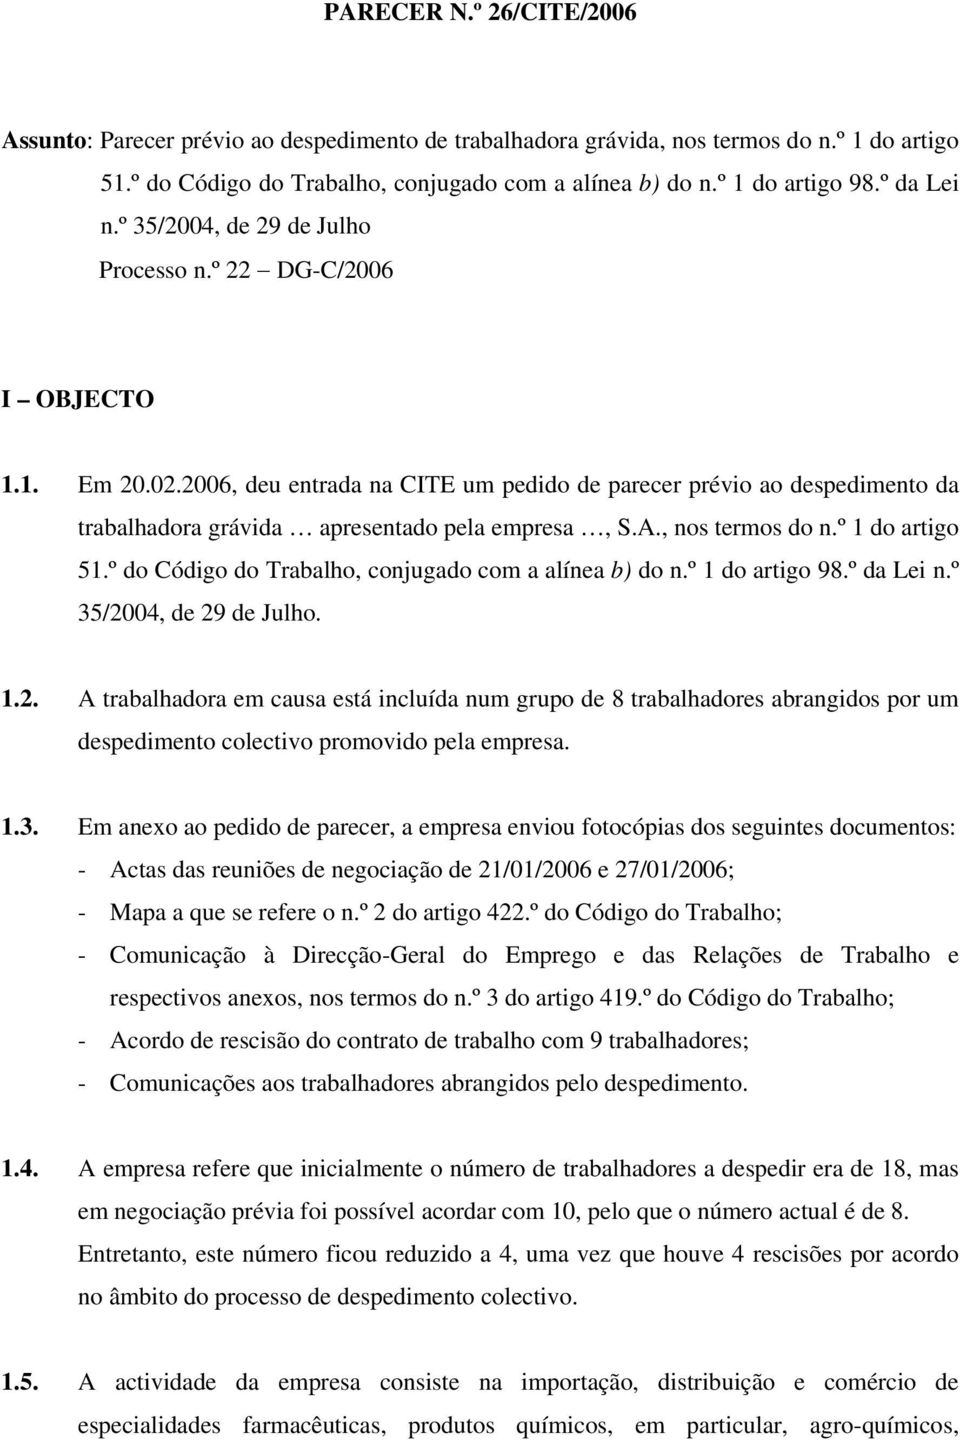 2006, deu entrada na CITE um pedido de parecer prévio ao despedimento da trabalhadora grávida apresentado pela empresa, S.A., nos termos do n.º 1 do artigo 51.